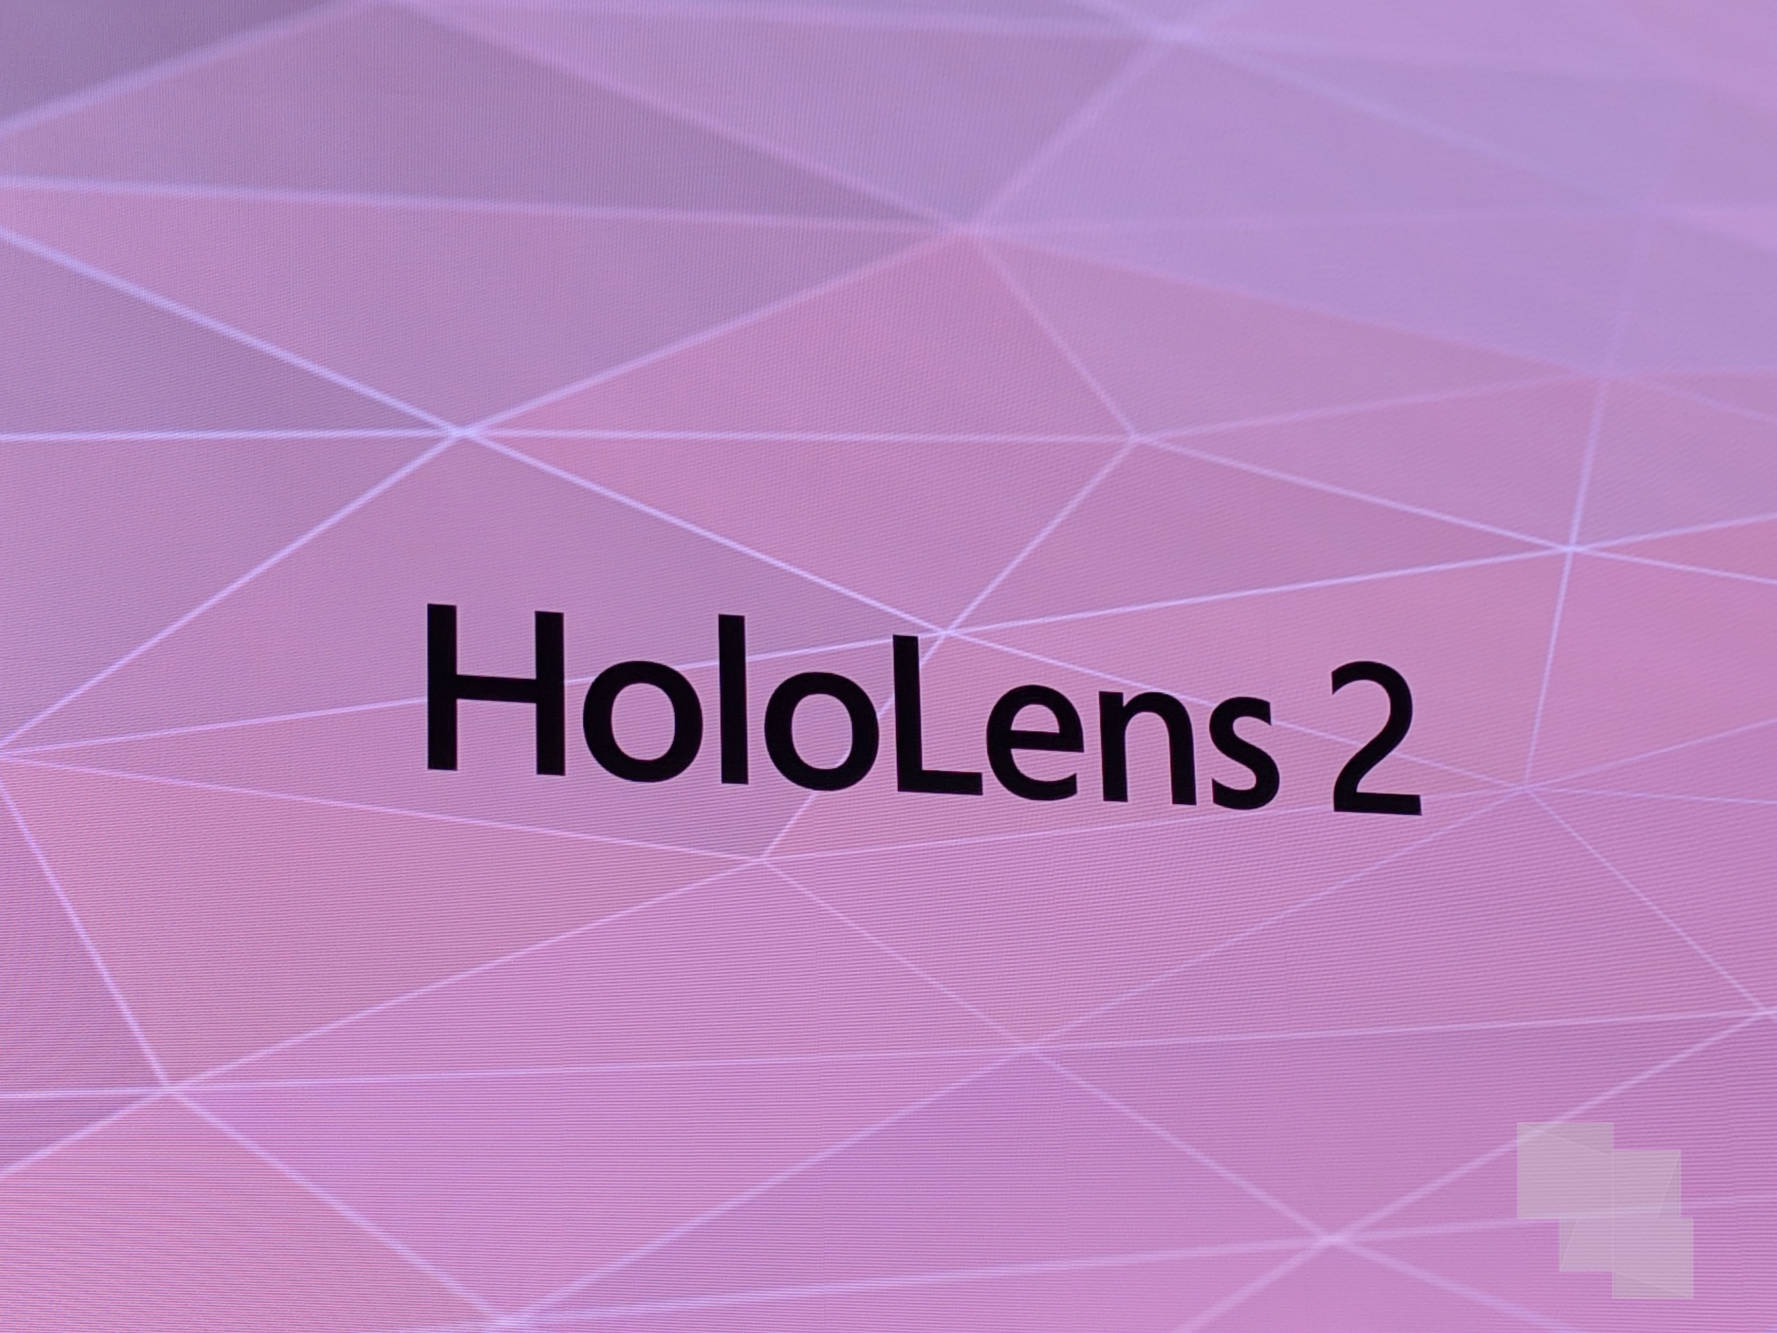 Campo de visión infinito, la promesa de Alex Kipman para HoloLens